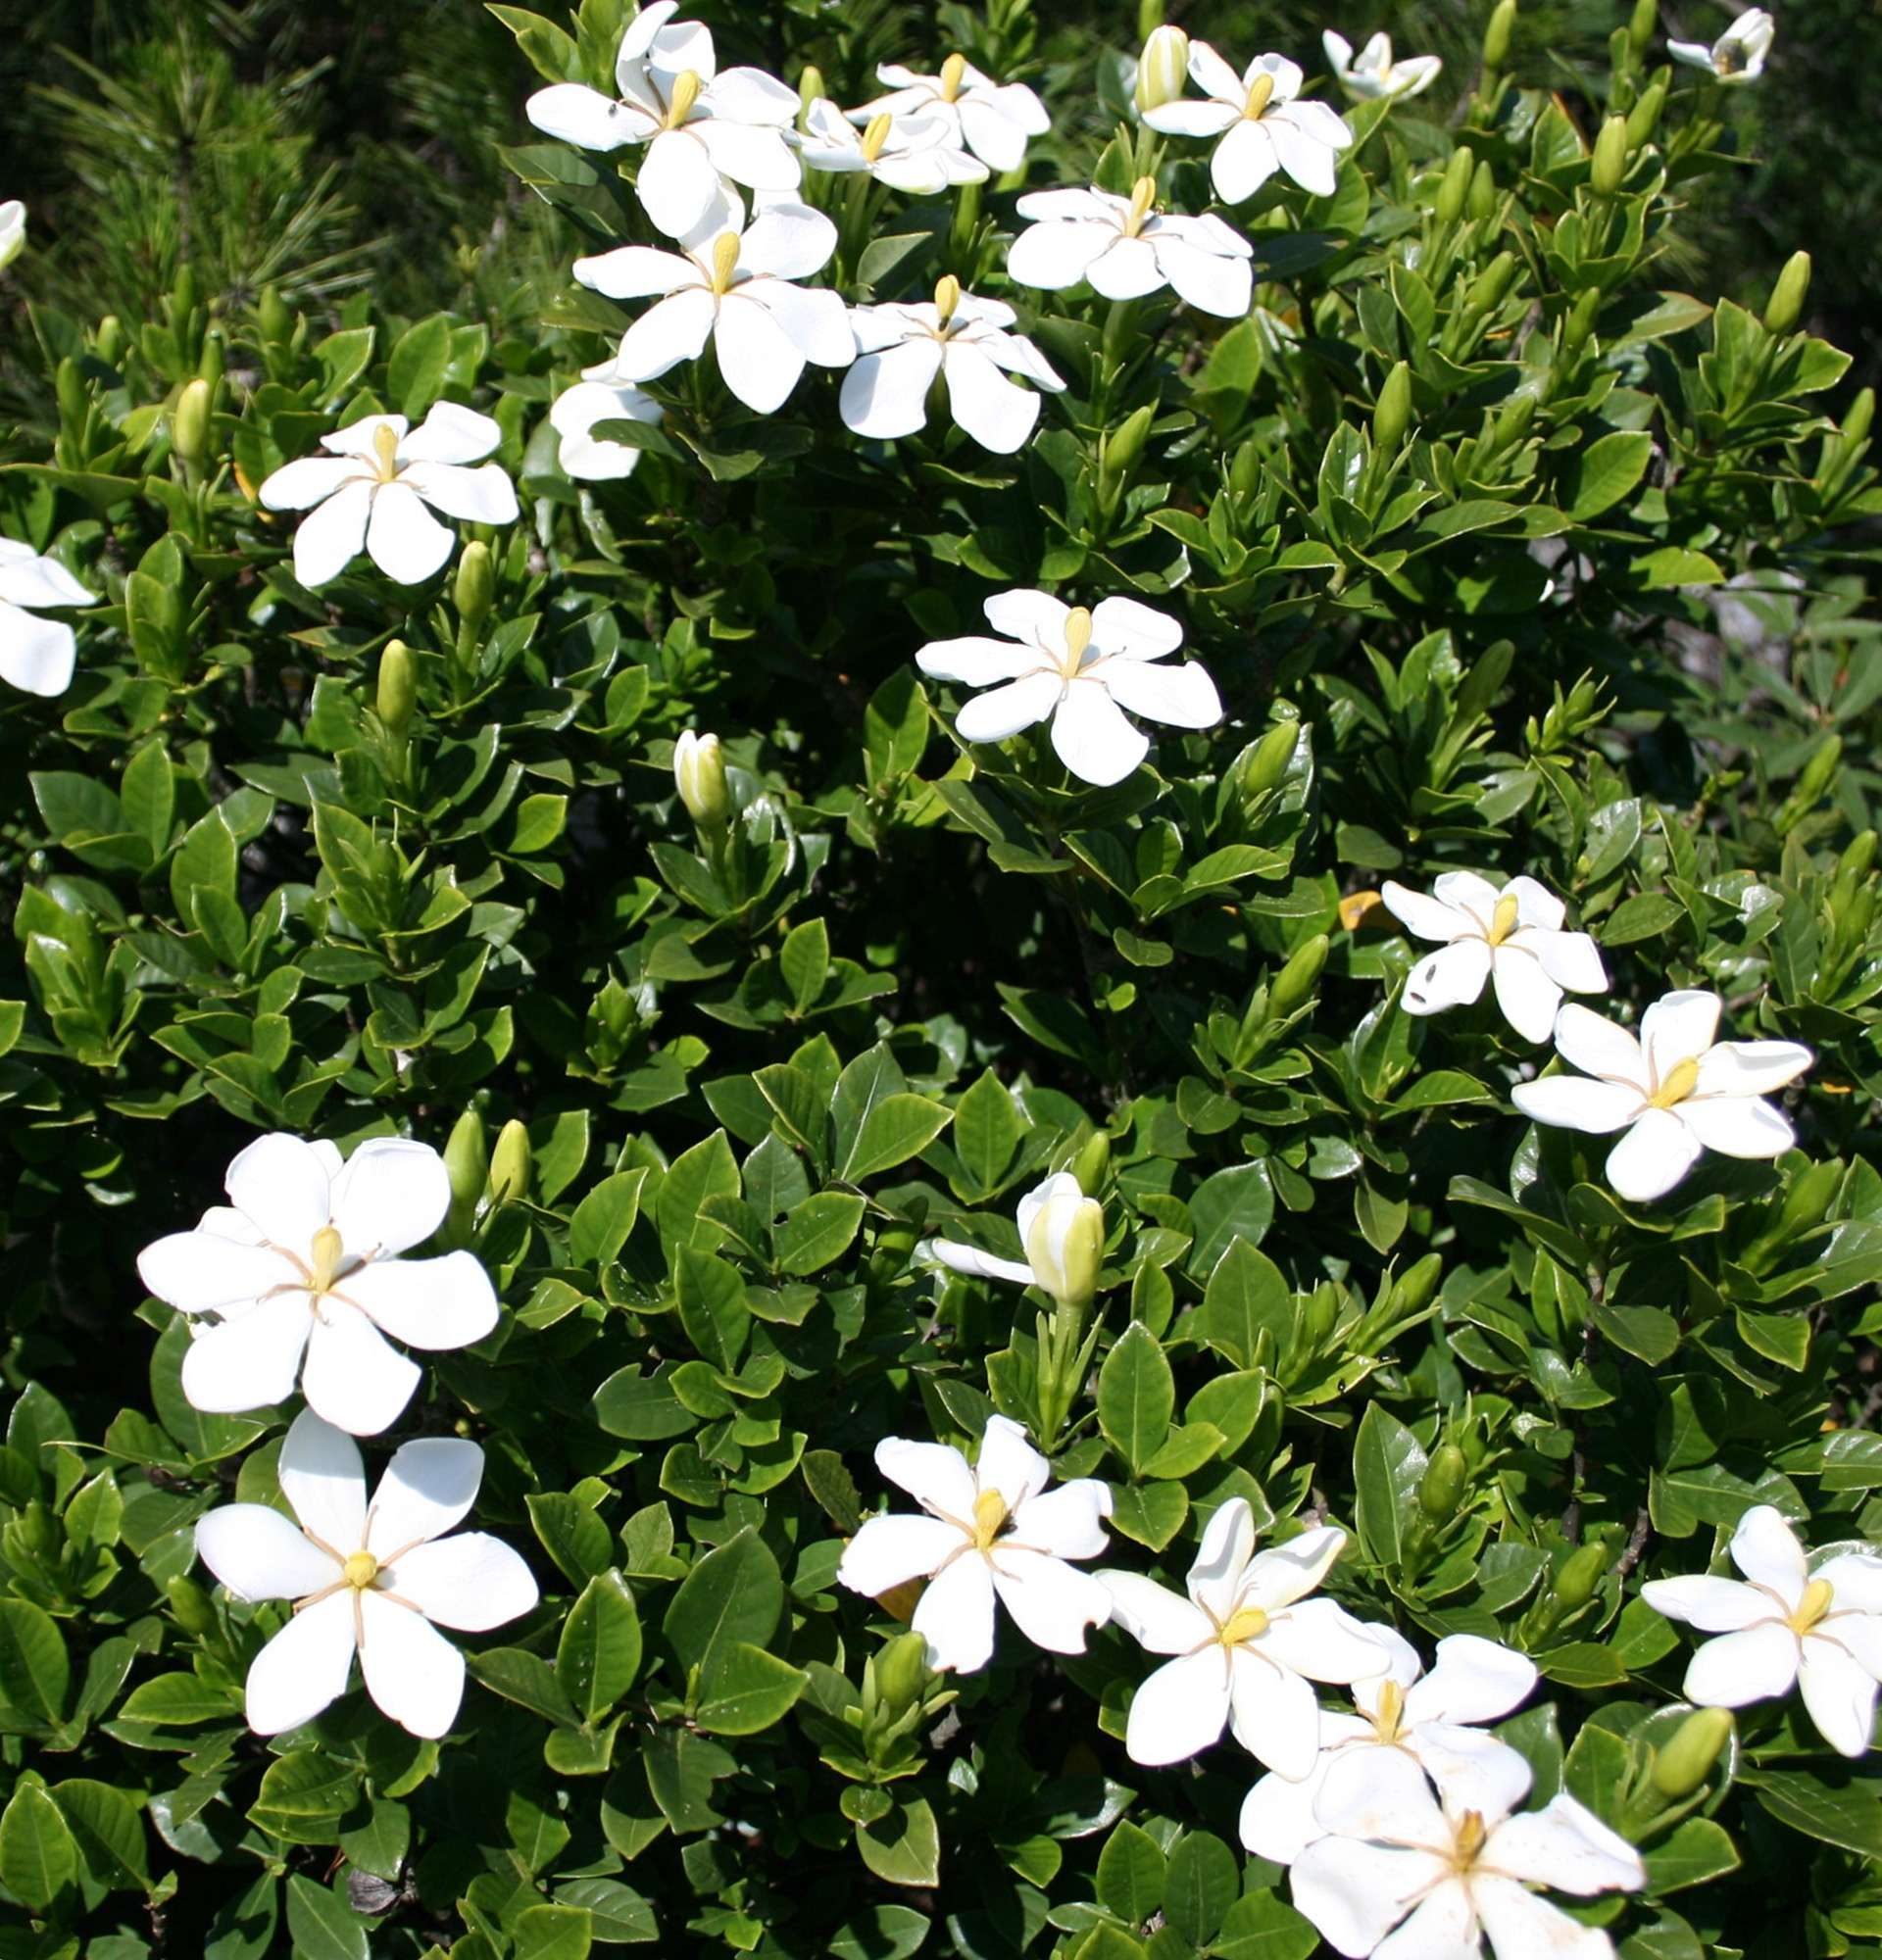 gardenia photo - shrub with white flowers